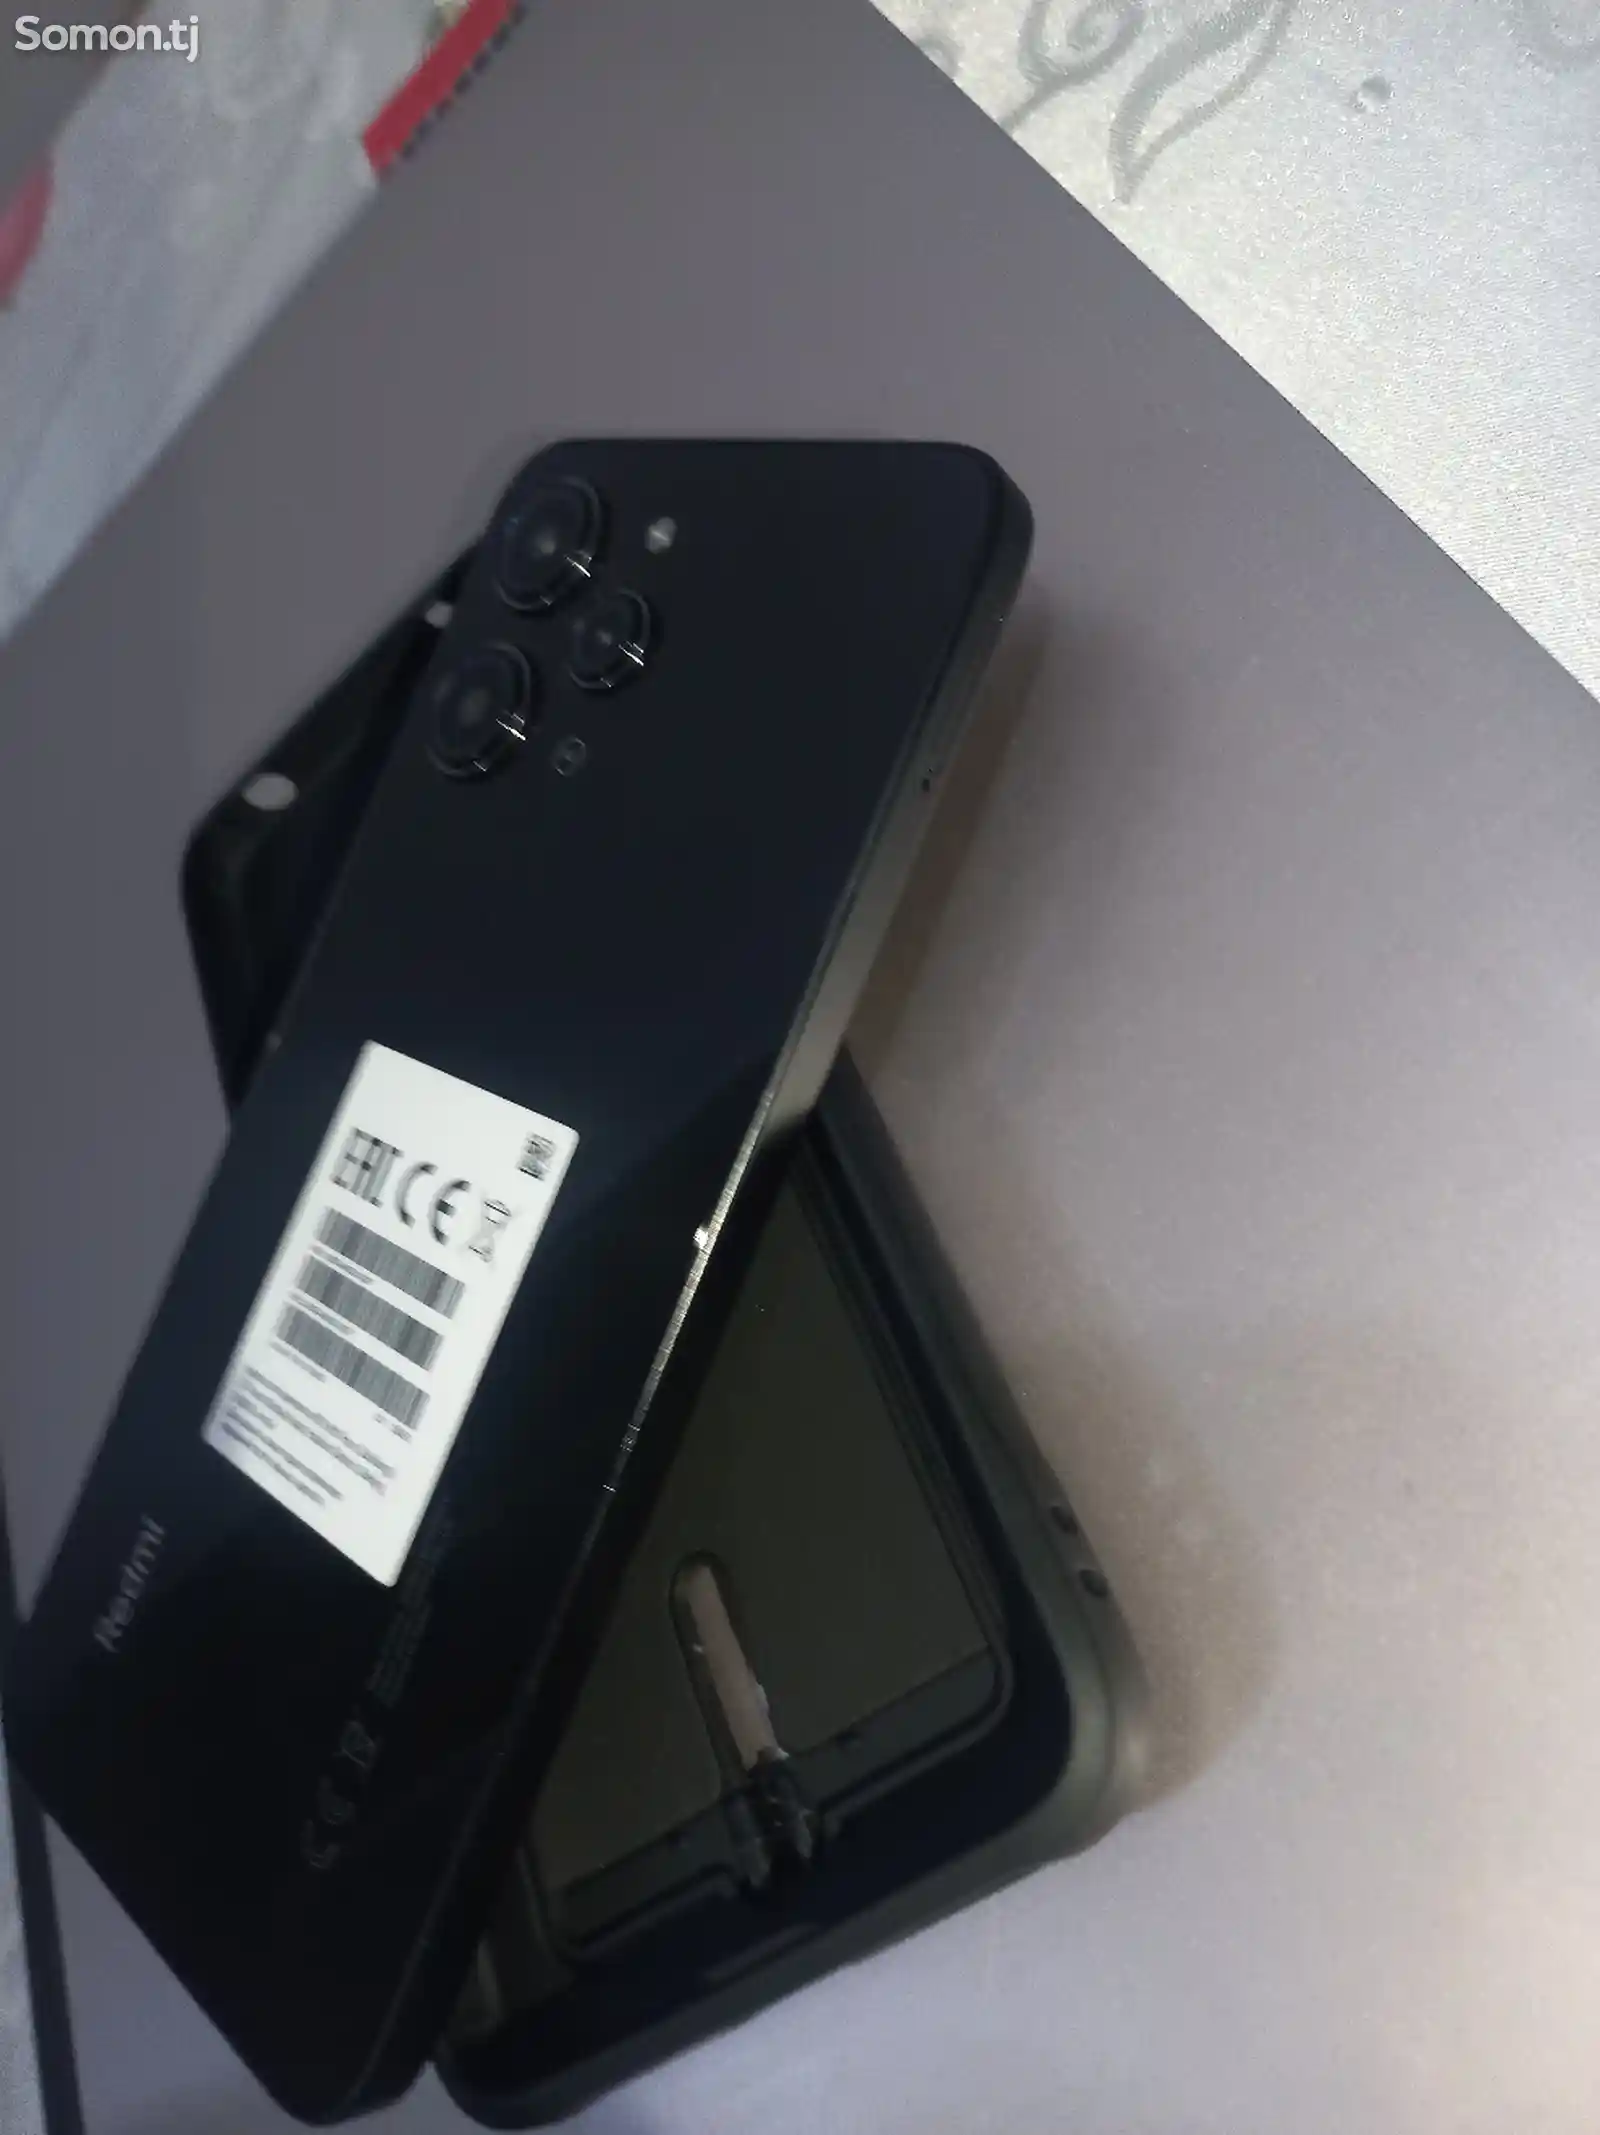 Xiaomi Redmi 12-4